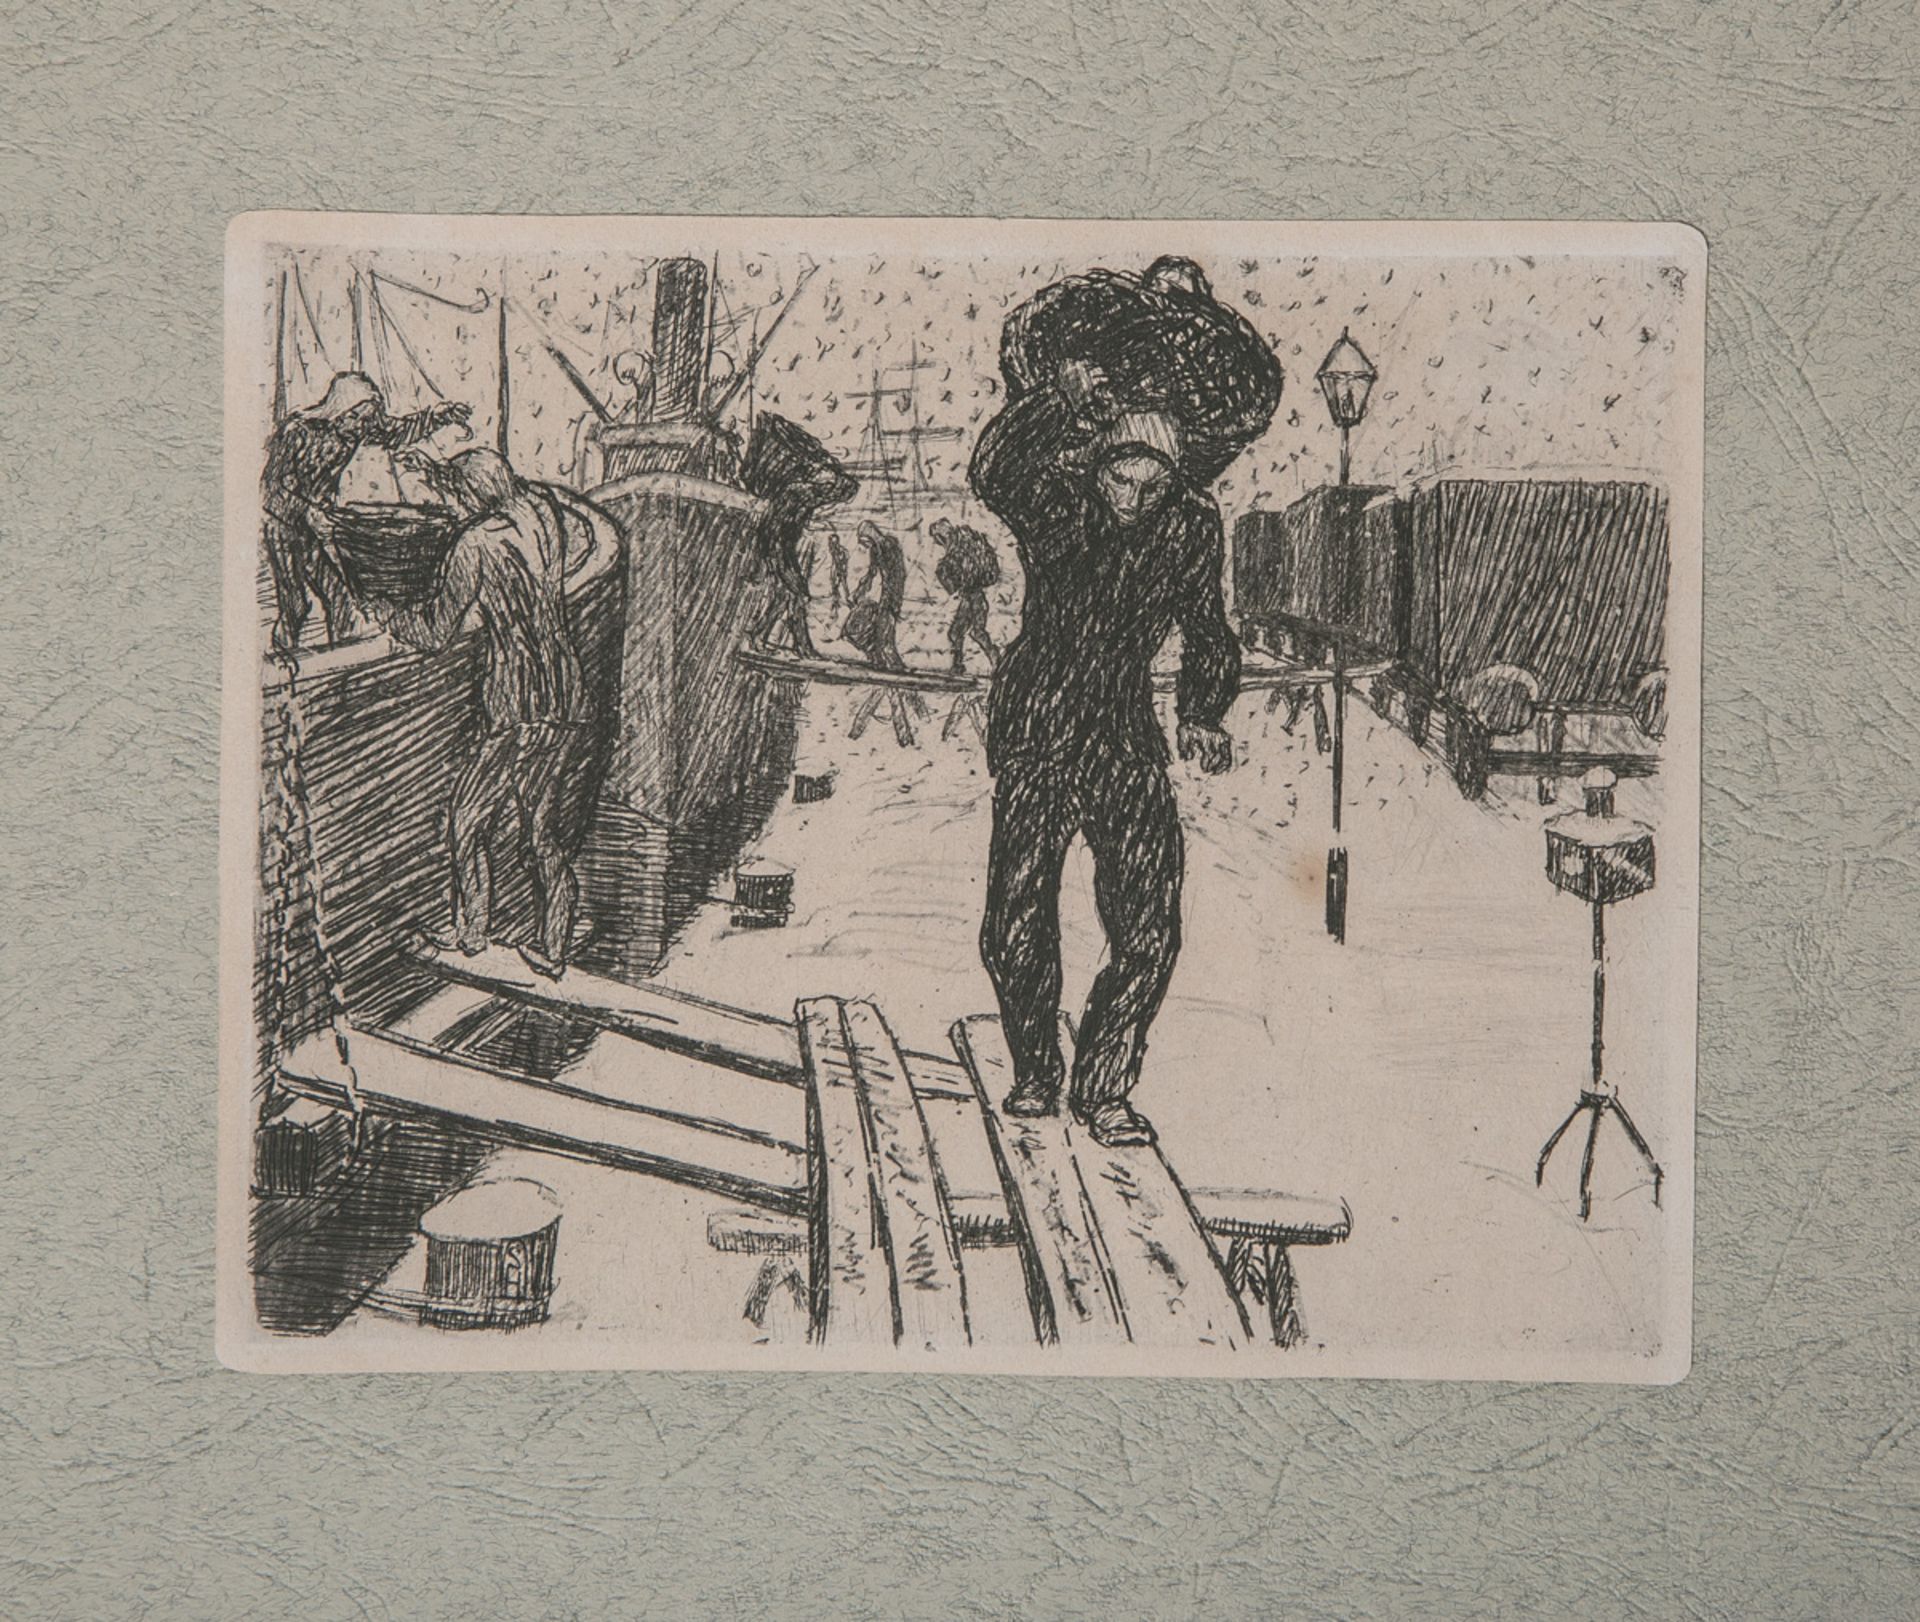 Hasse, Sella (1878 - 1963), "Kohlenlöschen im Schnee"